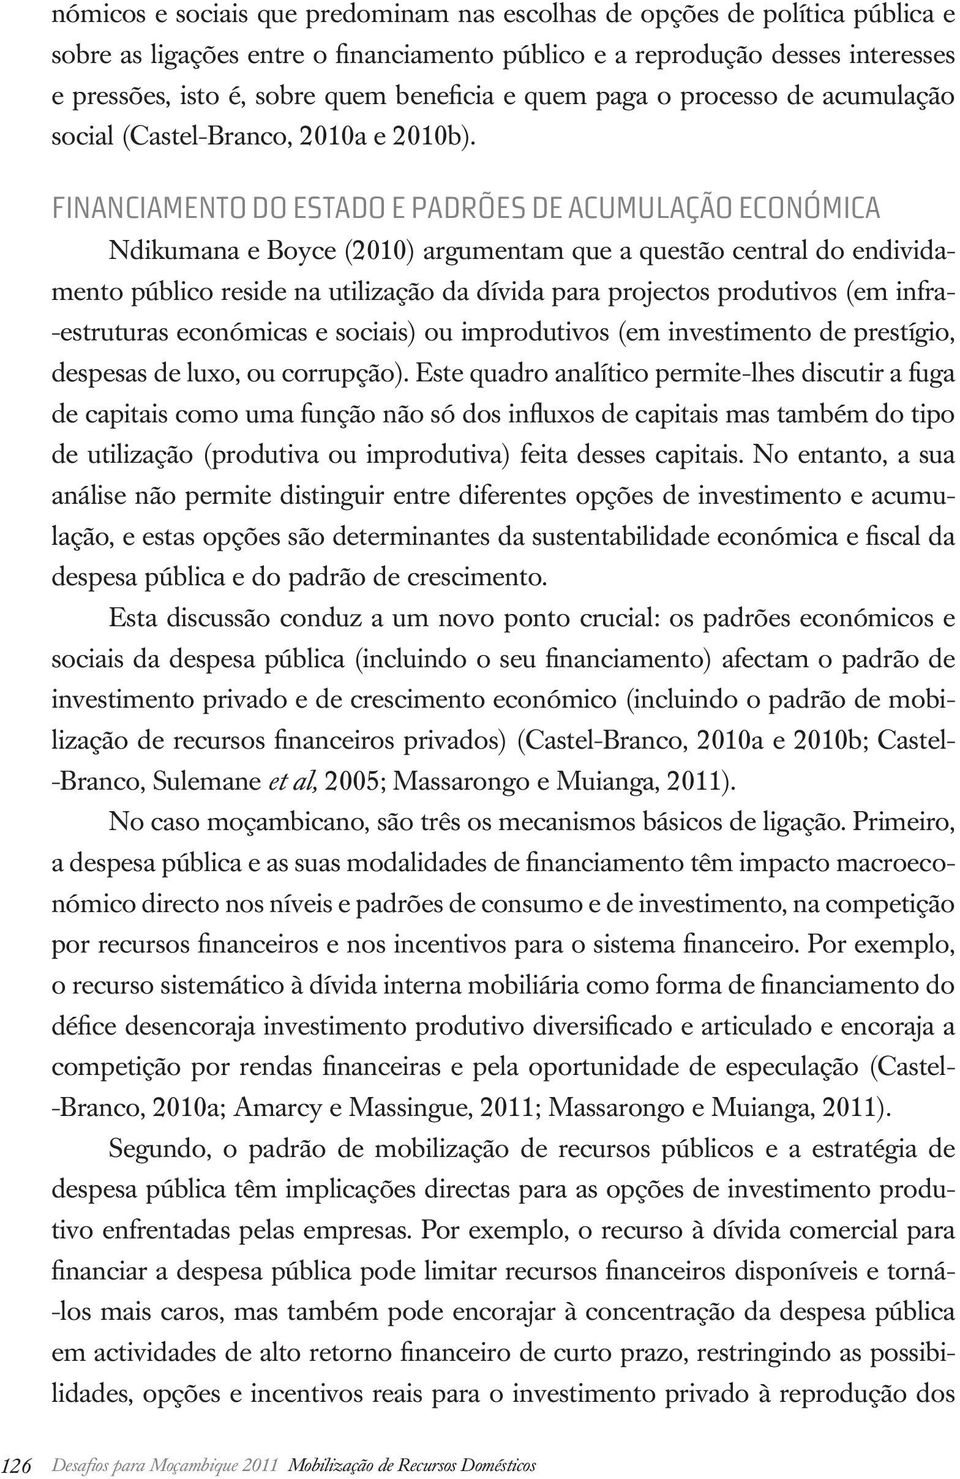 FINANCIAMENTO DO ESTADO E PADRÕES DE ACUMULAÇÃO ECONÓMICA Ndikumana e Boyce (2010) argumentam que a questão central do endividamento público reside na utilização da dívida para projectos produtivos